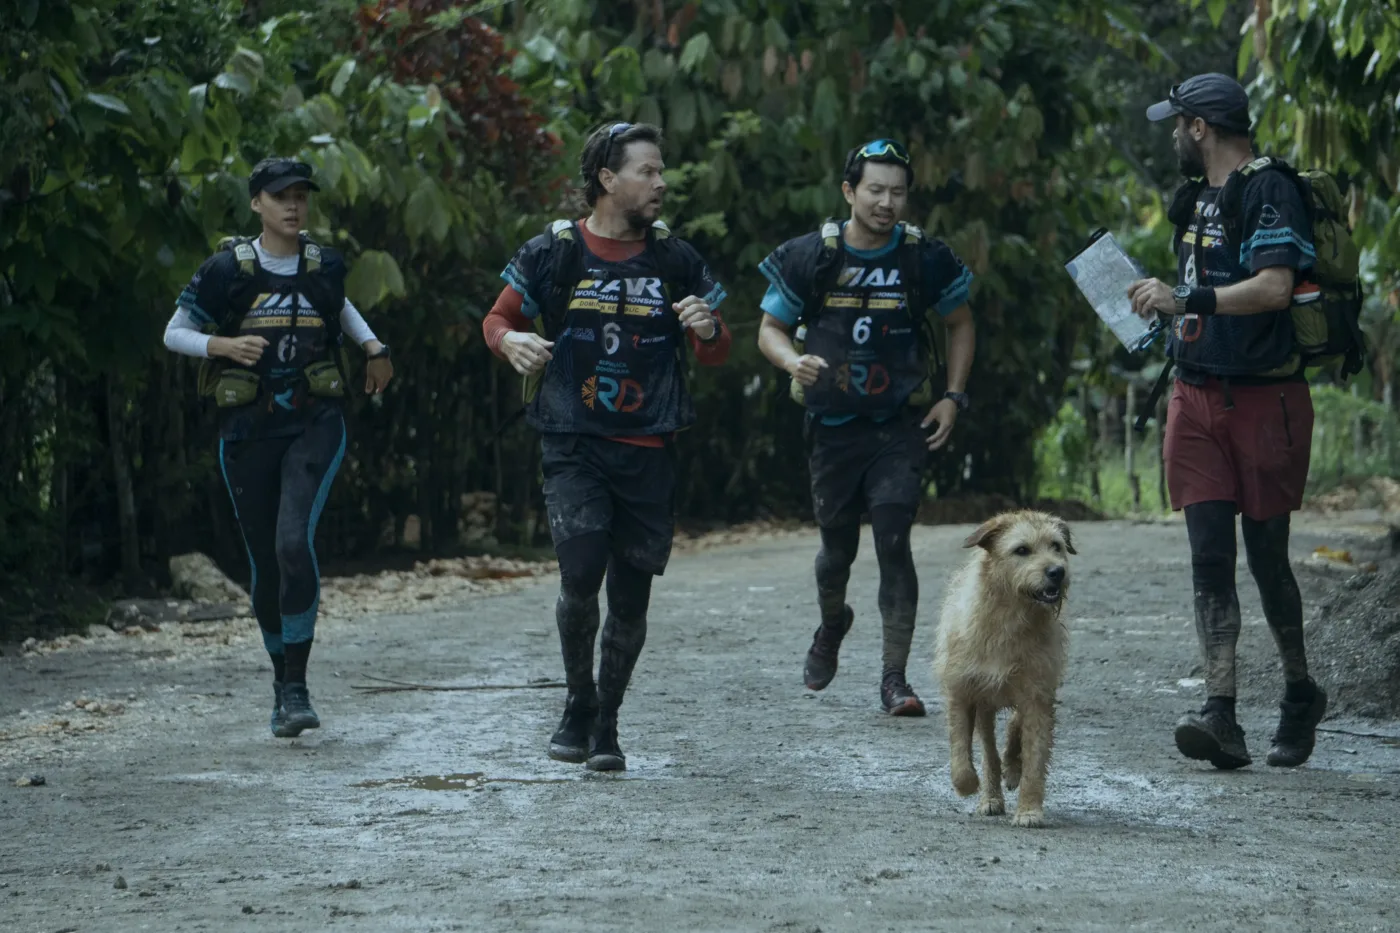 vier Athleten rennen auf einem Weg durch eine bewaldete Gegend, zwischen ihnen läuft ein Hund